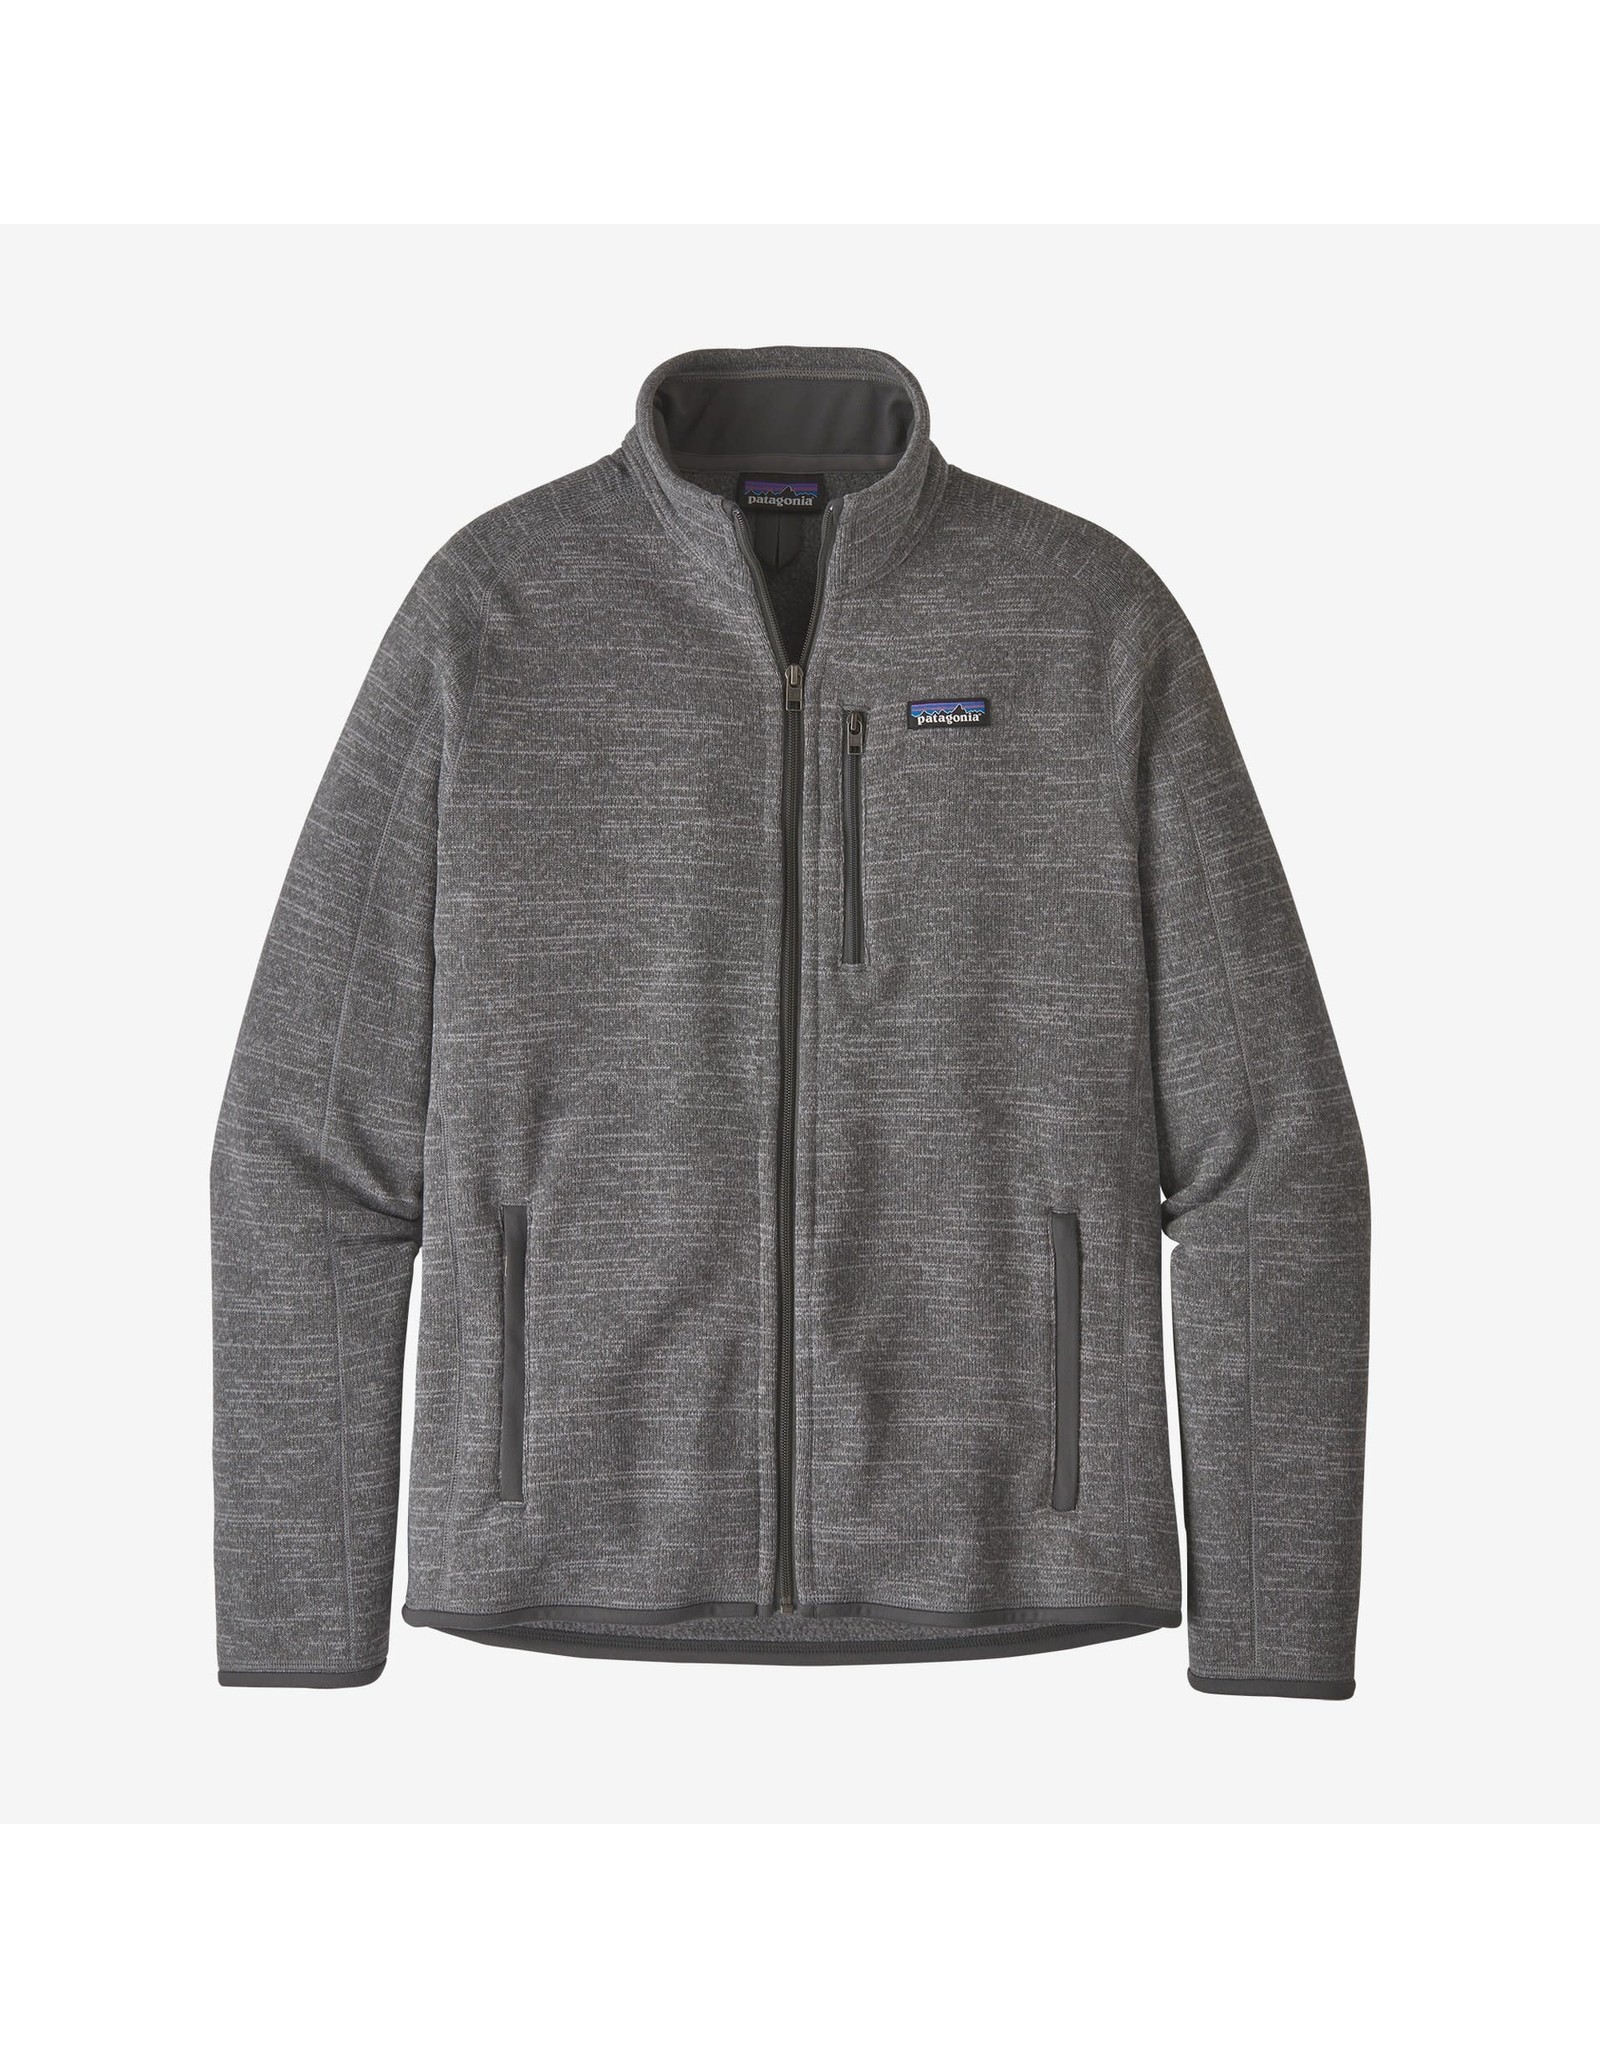 Patagonia M Better Sweater Jacket - Nickel